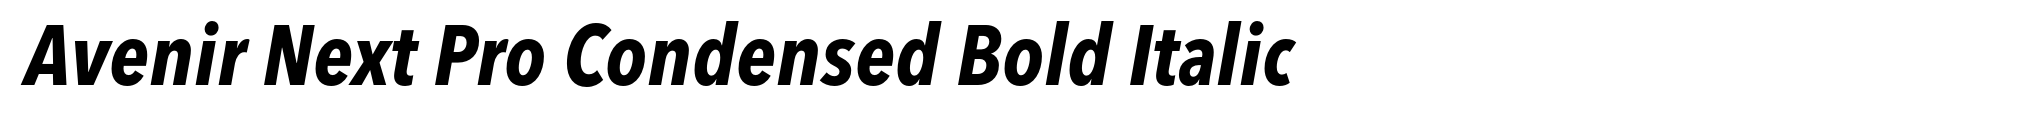 Avenir Next Pro Condensed Bold Italic image